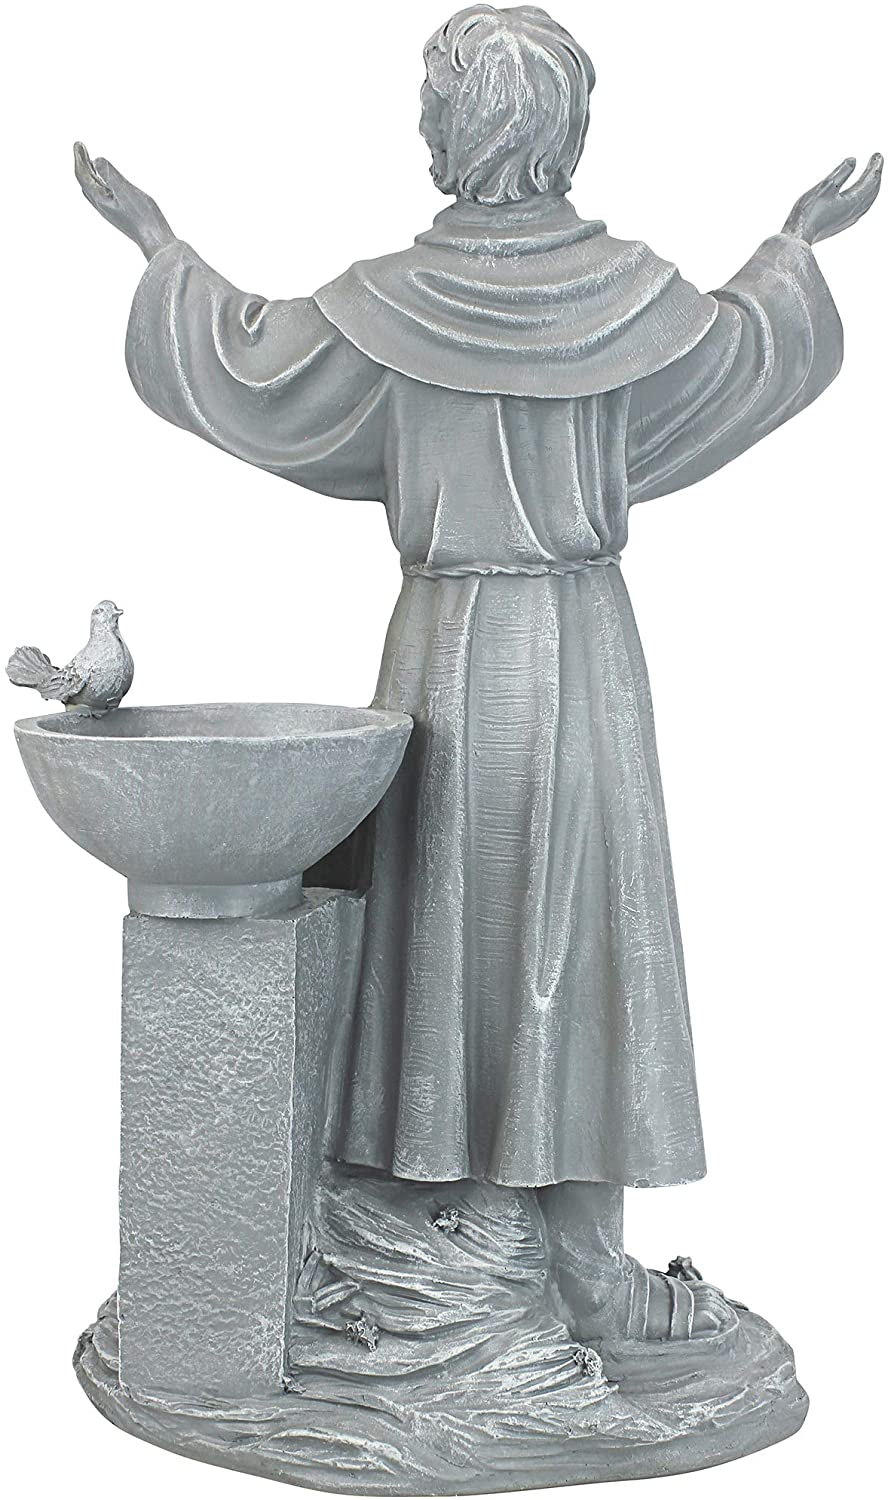 Скульптура благословения Святого Франциска религиозного сада